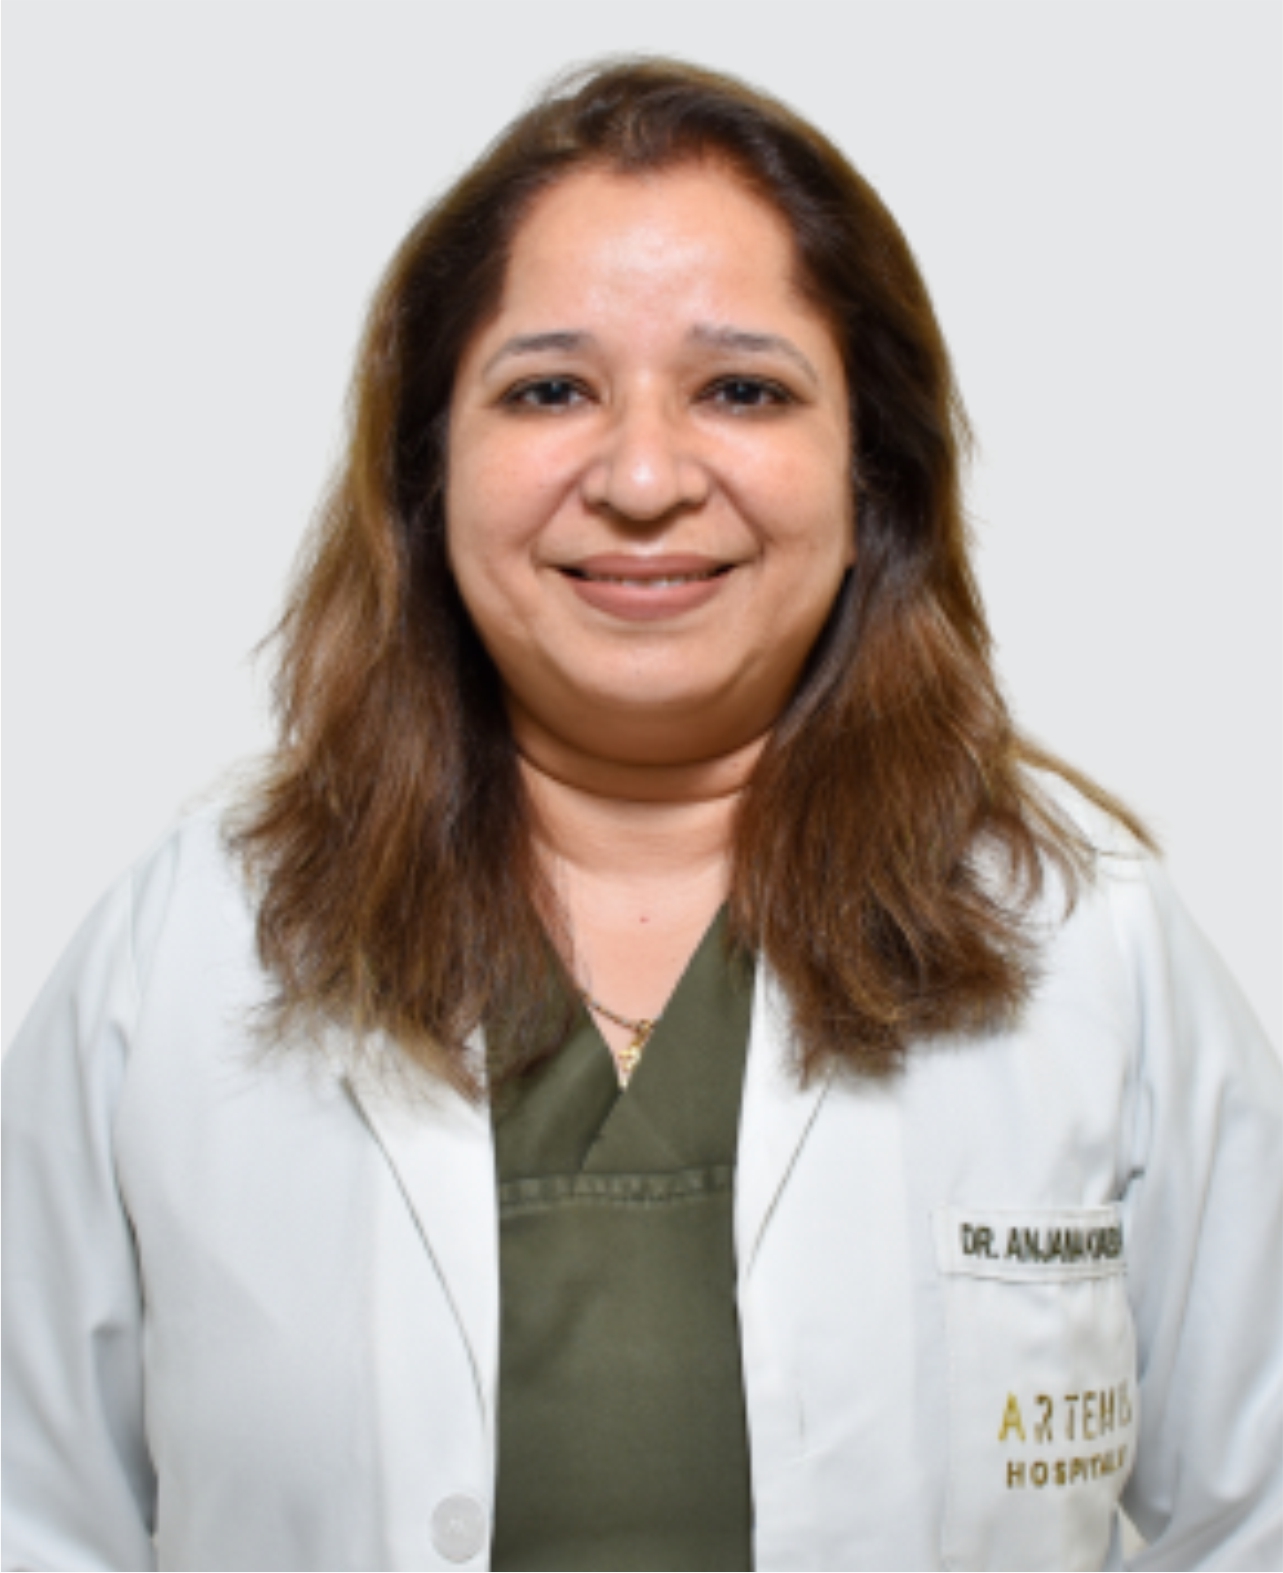 Dr. Anjana Kharbanda